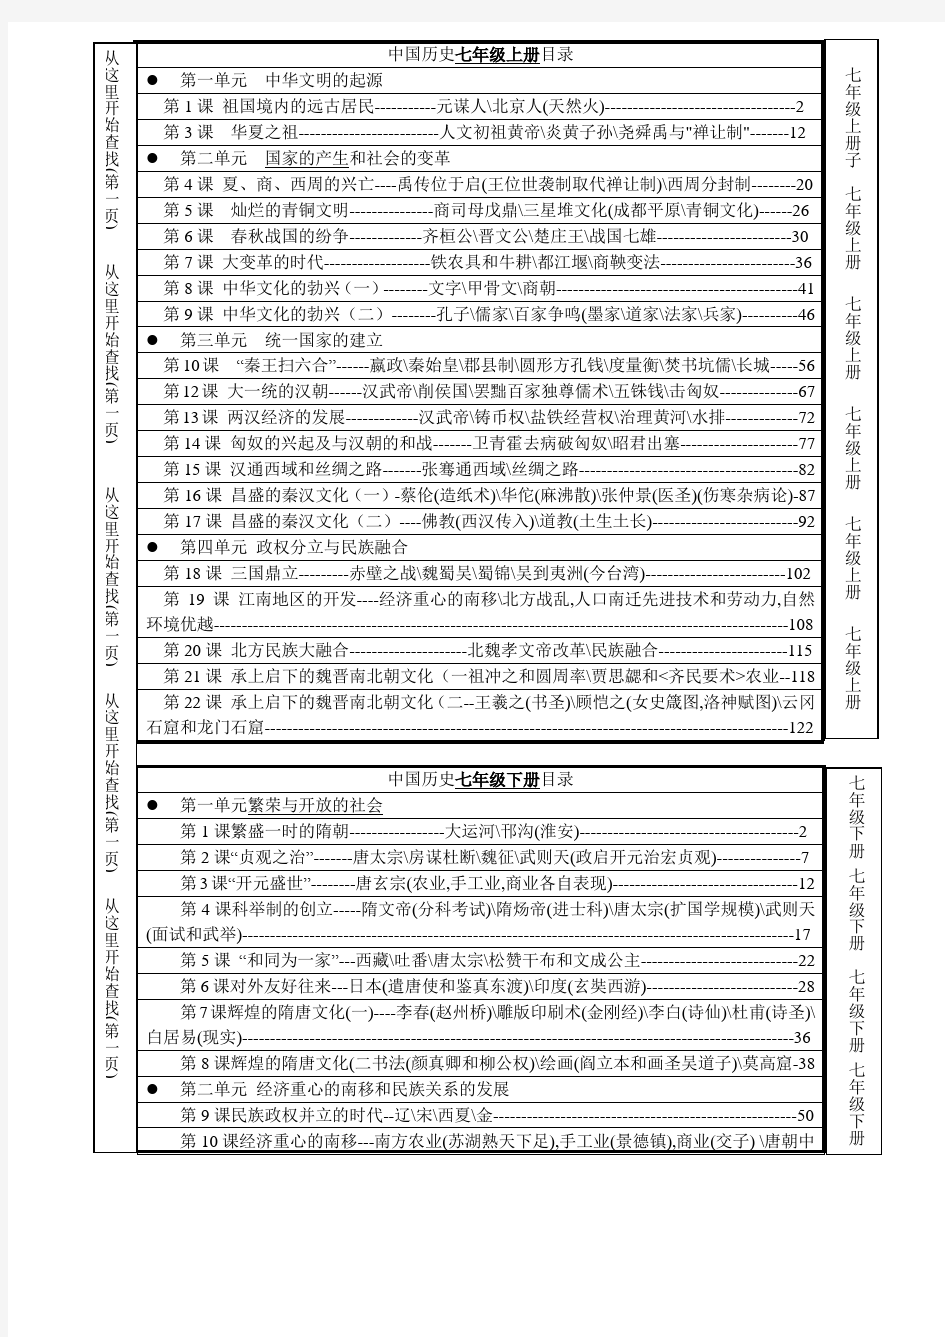 2016中考历史六本书全目录(适合开卷考试)